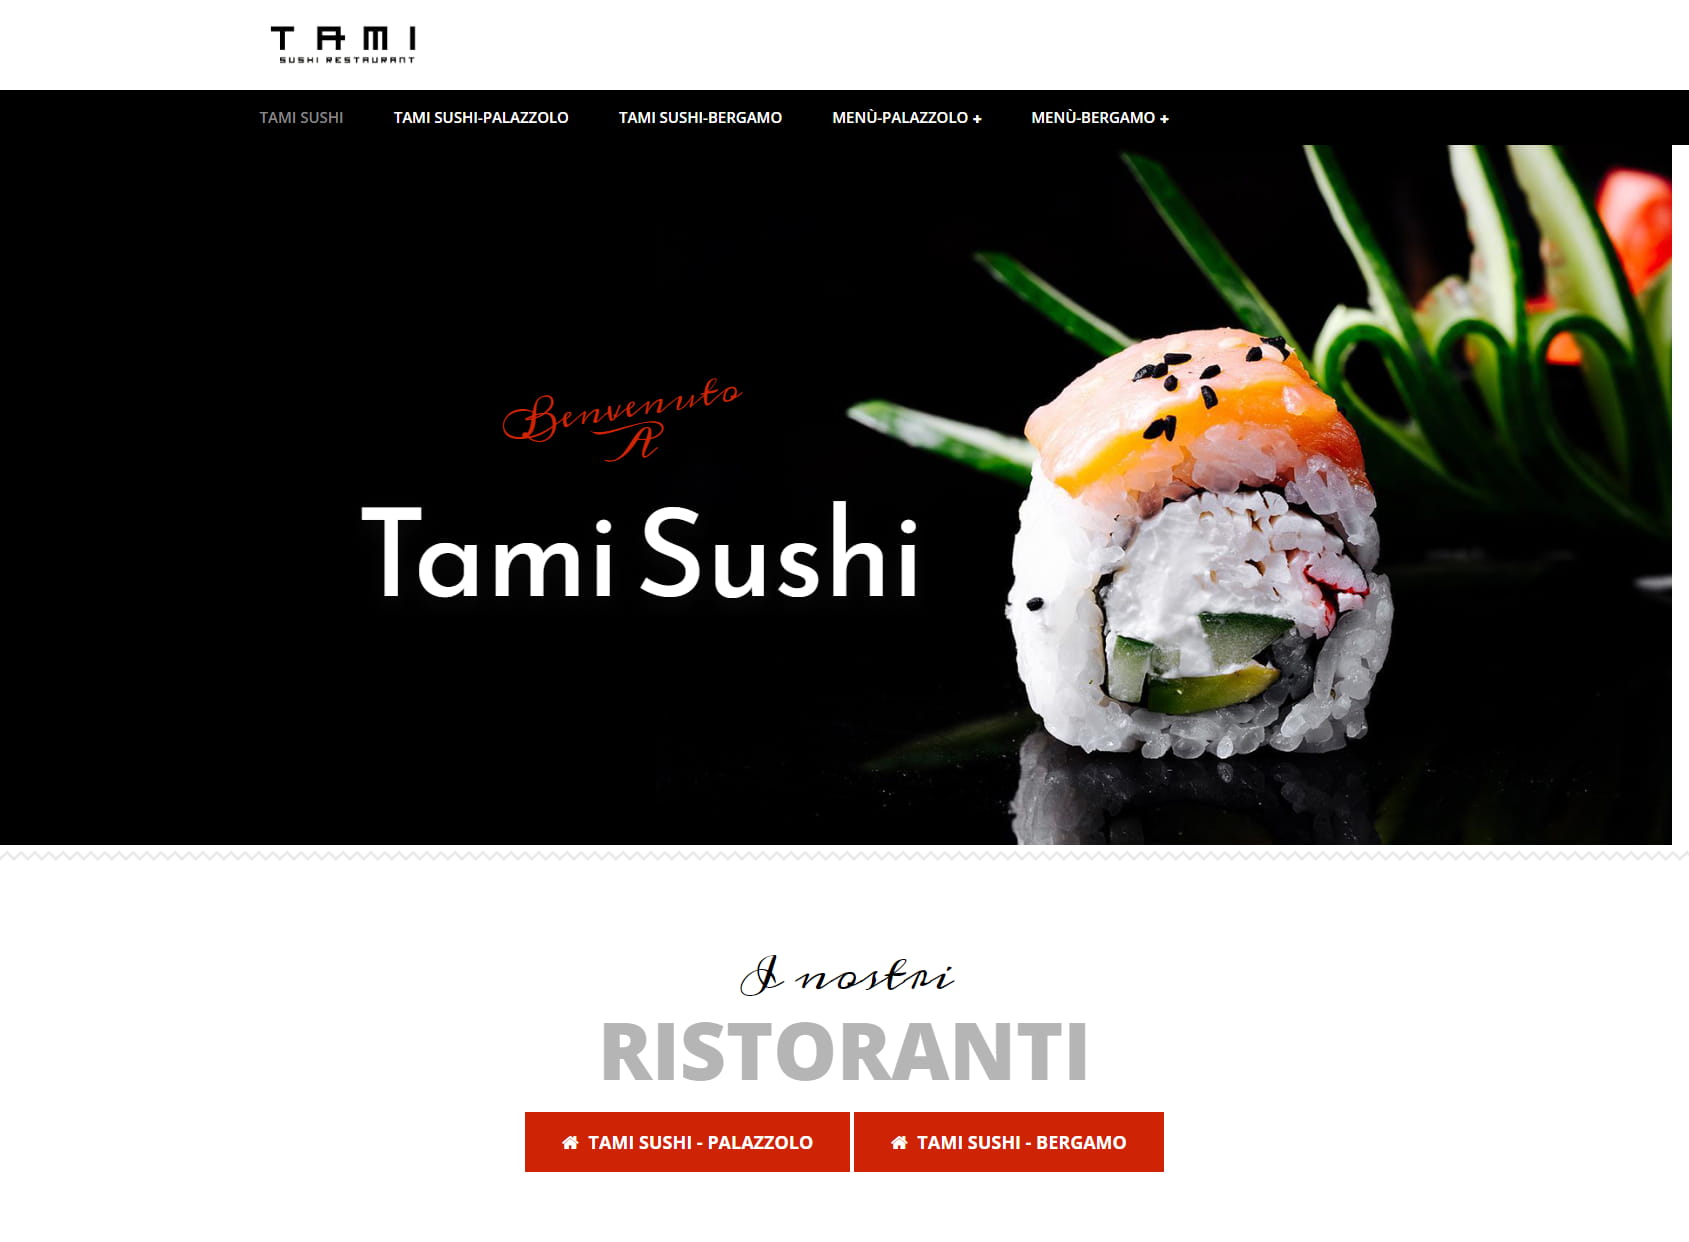 Tami sushi